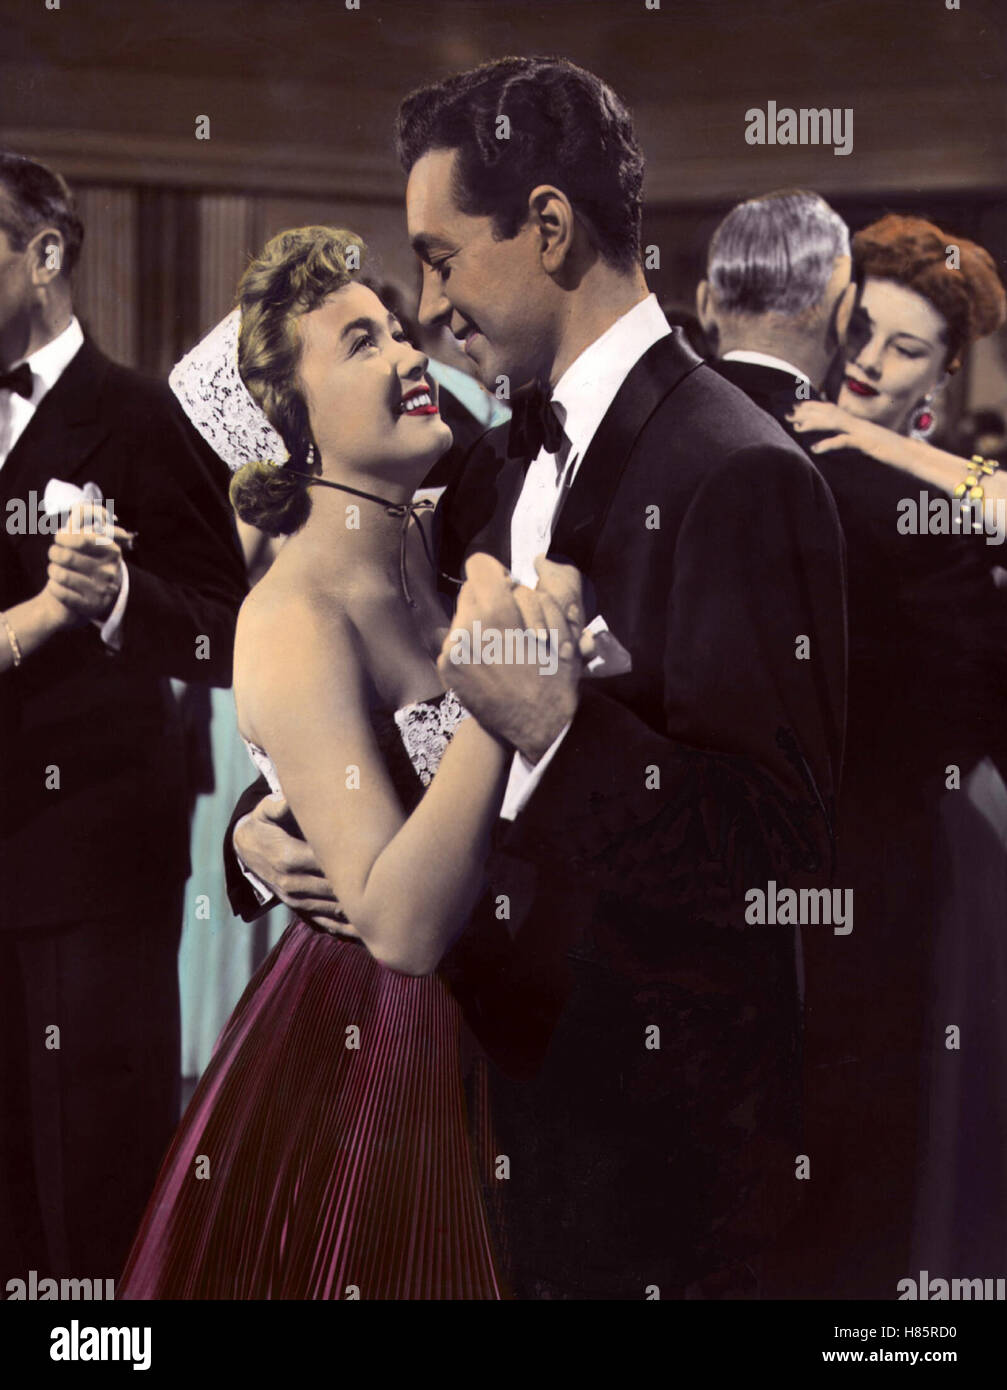 Hübsch, jung und verliebt, (RICH, YOUNG AND PRETTY) USA 1951, Regie: Norman Taurog, JANE POWELL, VIC DAMONE, Key: Tanz, Tanzen Stock Photo